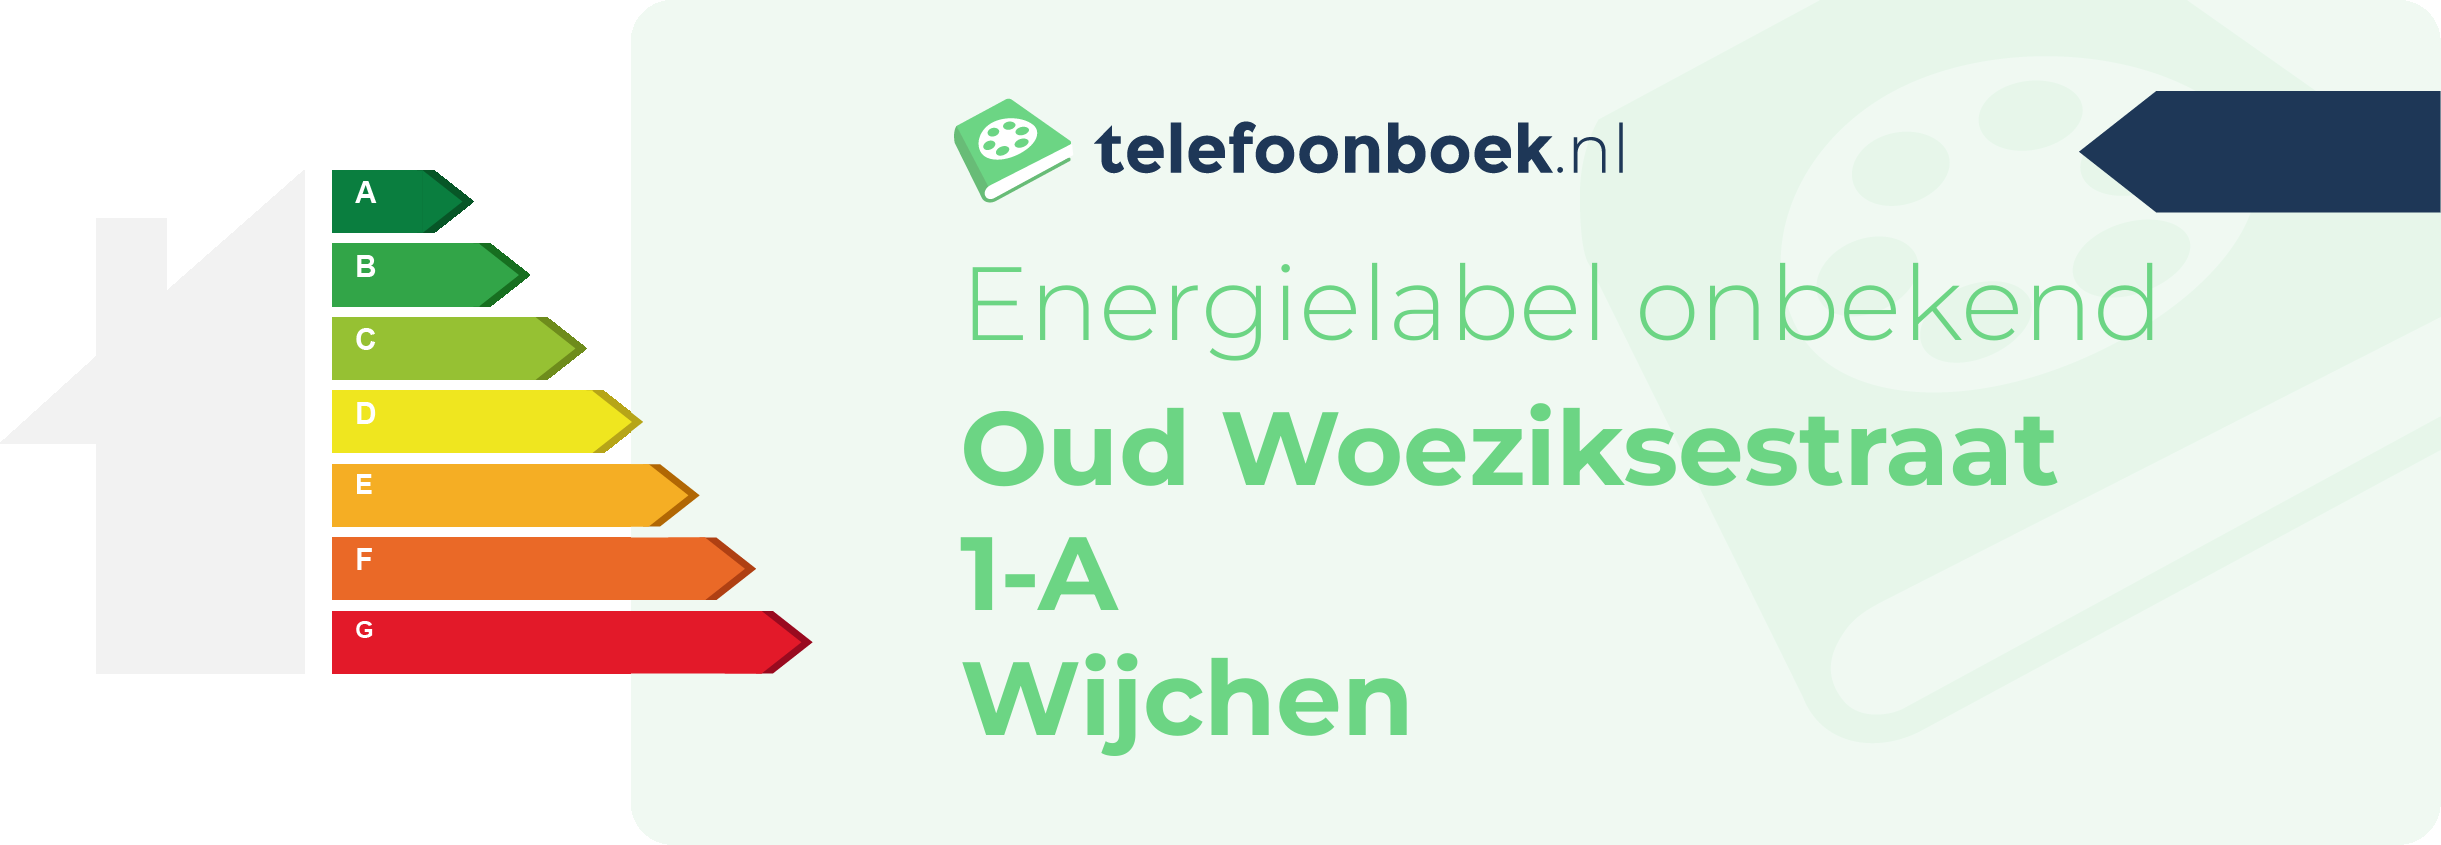 Energielabel Oud Woeziksestraat 1-A Wijchen